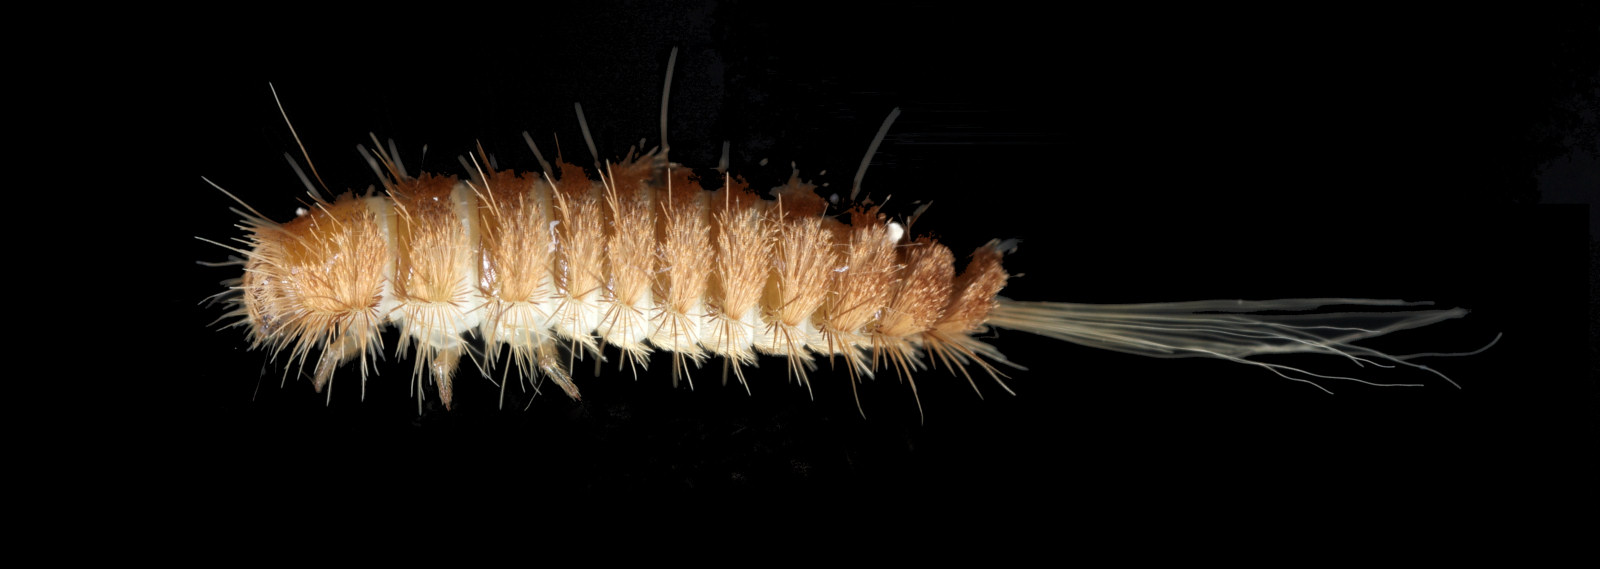 Carpet beetle larvae, the Woolly Bear, in Swansea, South Wales